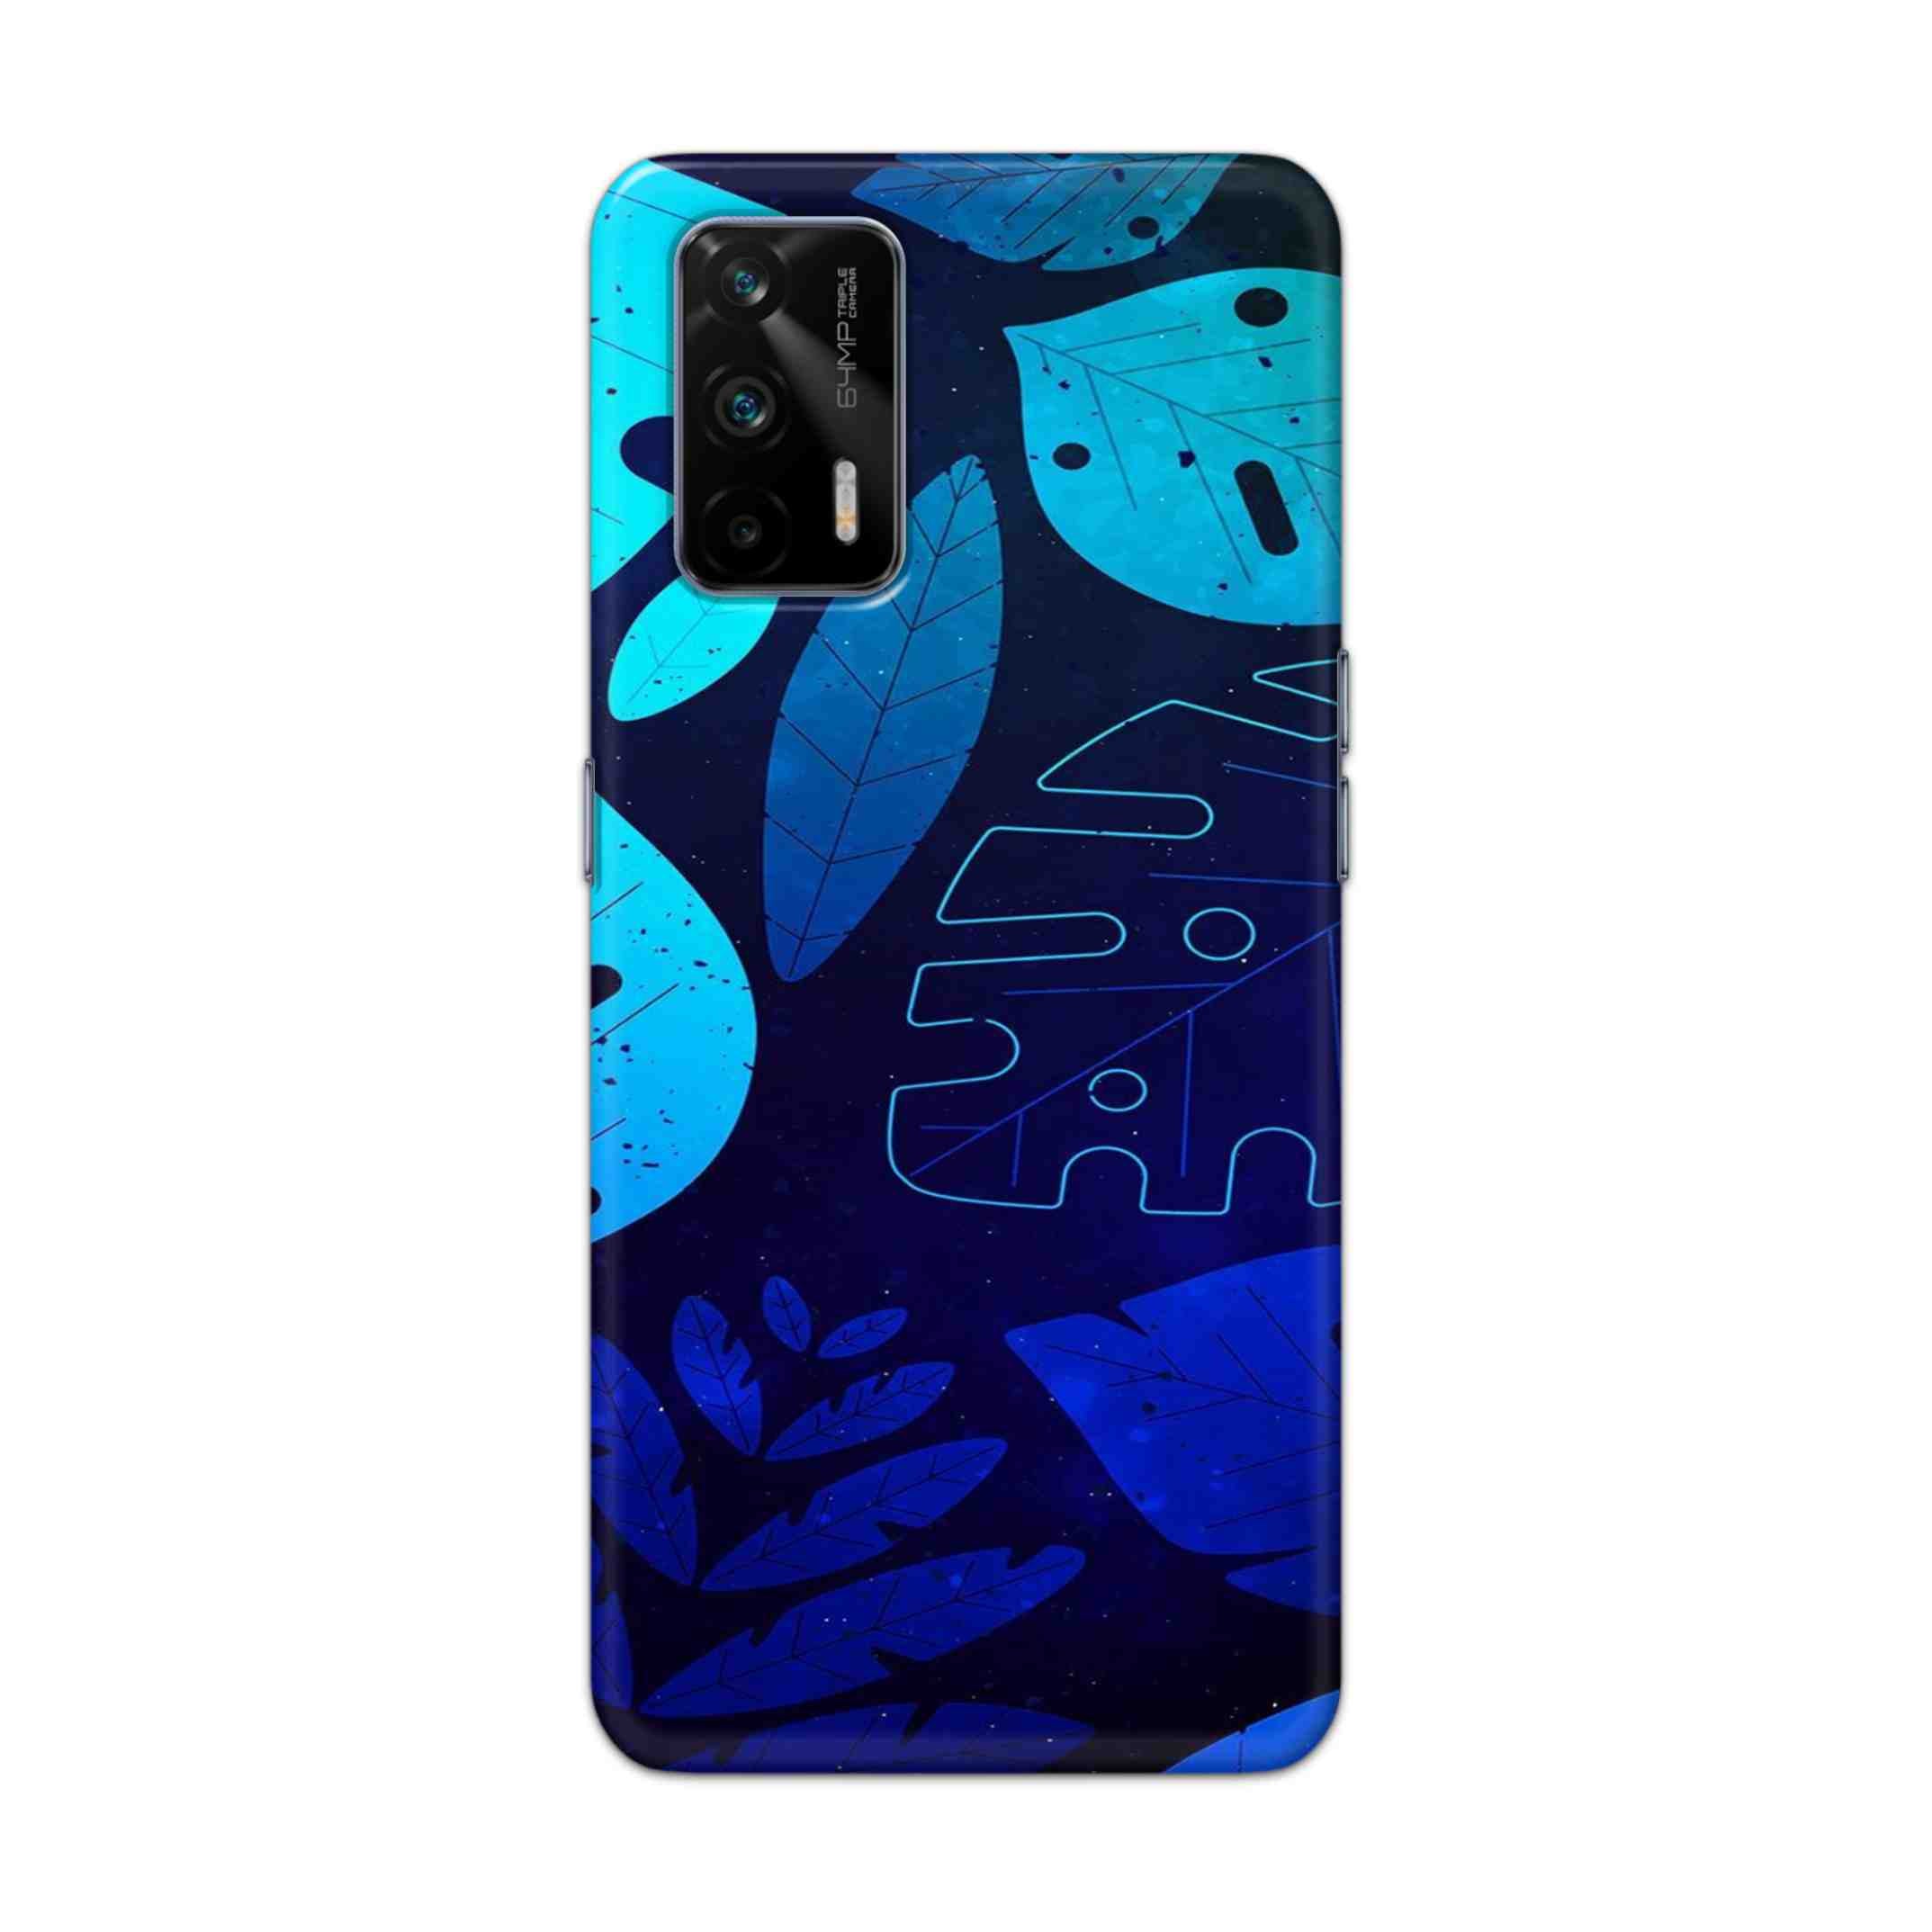 Buy Neon Leaf Hard Back Mobile Phone Case Cover For Realme GT 5G Online